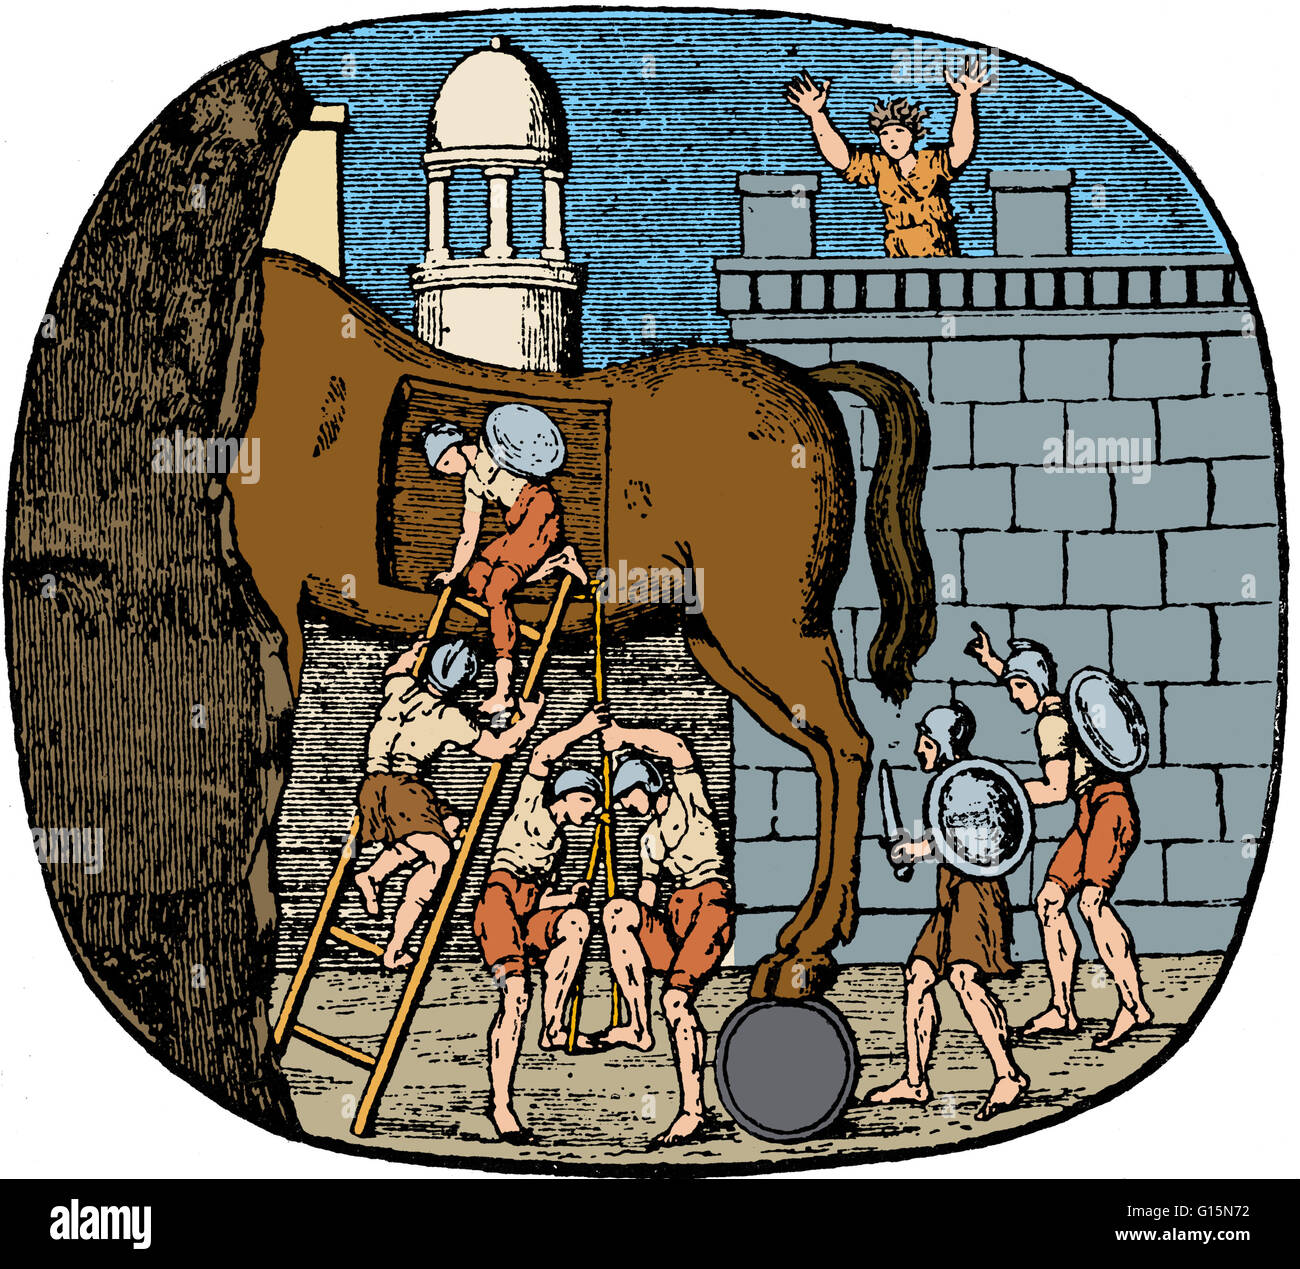 Le cheval de Troie est une histoire de la guerre de Troie sur le stratagème qui a permis aux Grecs pour enfin entrer dans la ville de Troie et de mettre fin au conflit. Dans la version canonique, après une 10-ans de siège, les Grecs ont construit un énorme cheval de bois, et l'h Banque D'Images